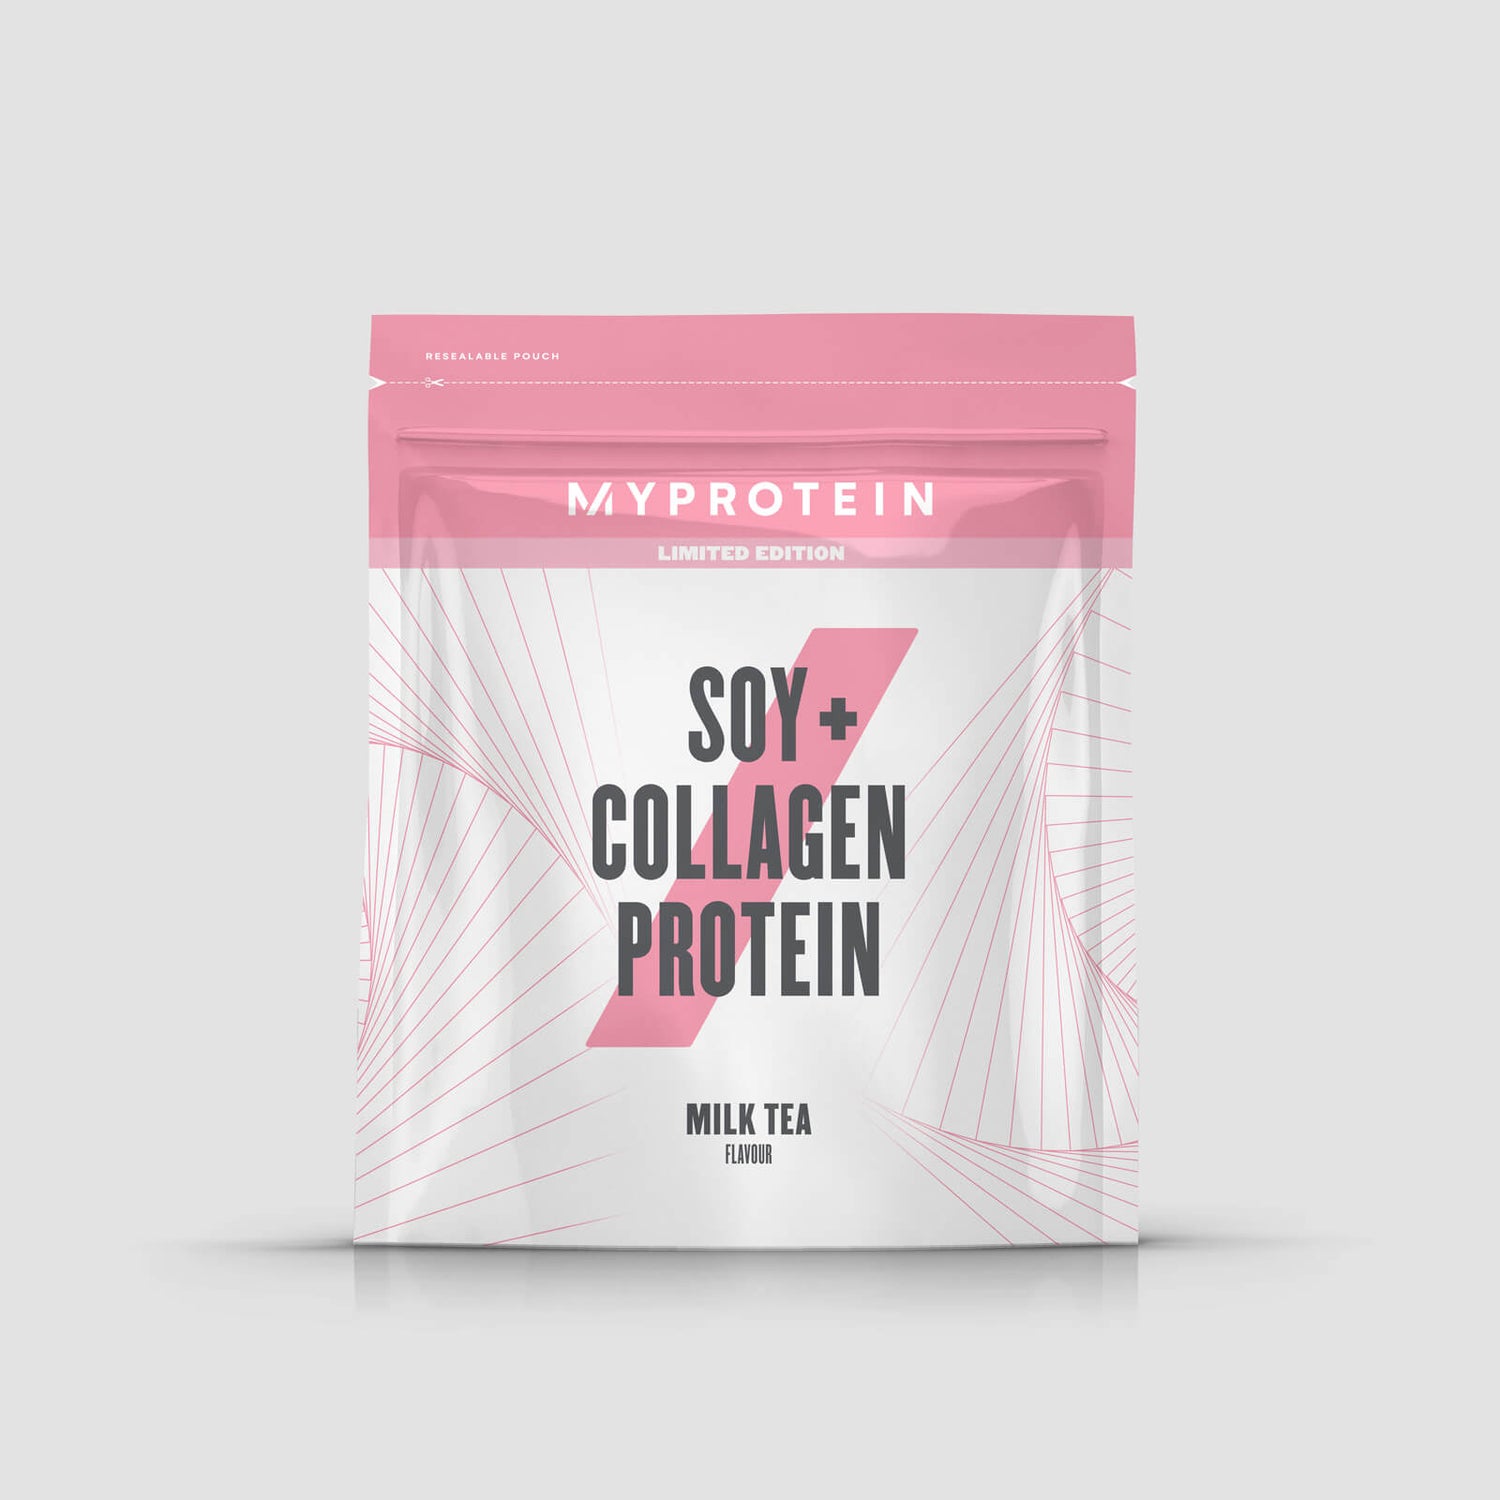 소이 + 콜라겐 프로틴 - 1kg - 밀크티